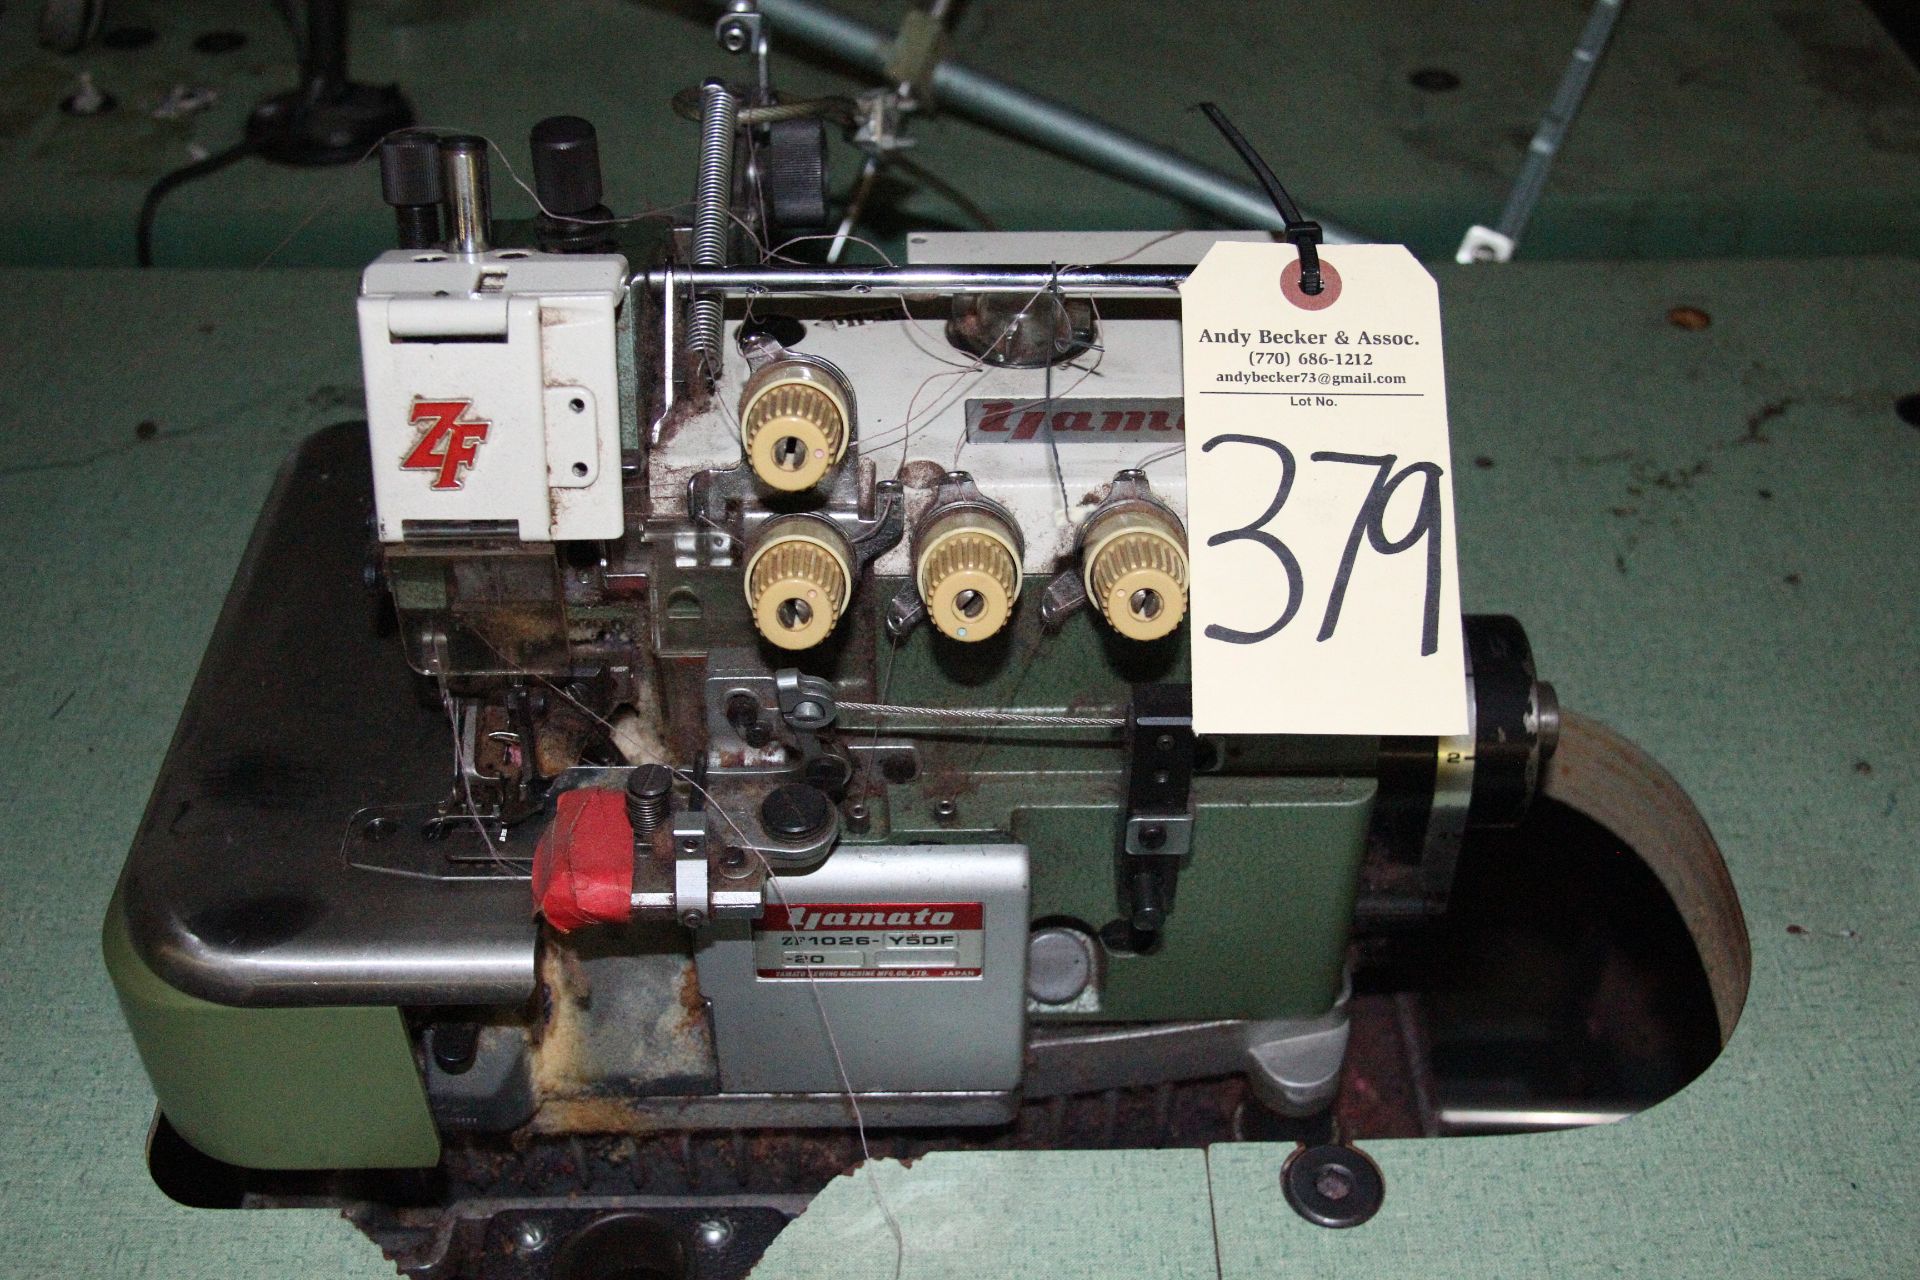 Yamato ZF1026 4-Thread Mock Safety Stitch Sewing Machine - Image 2 of 5